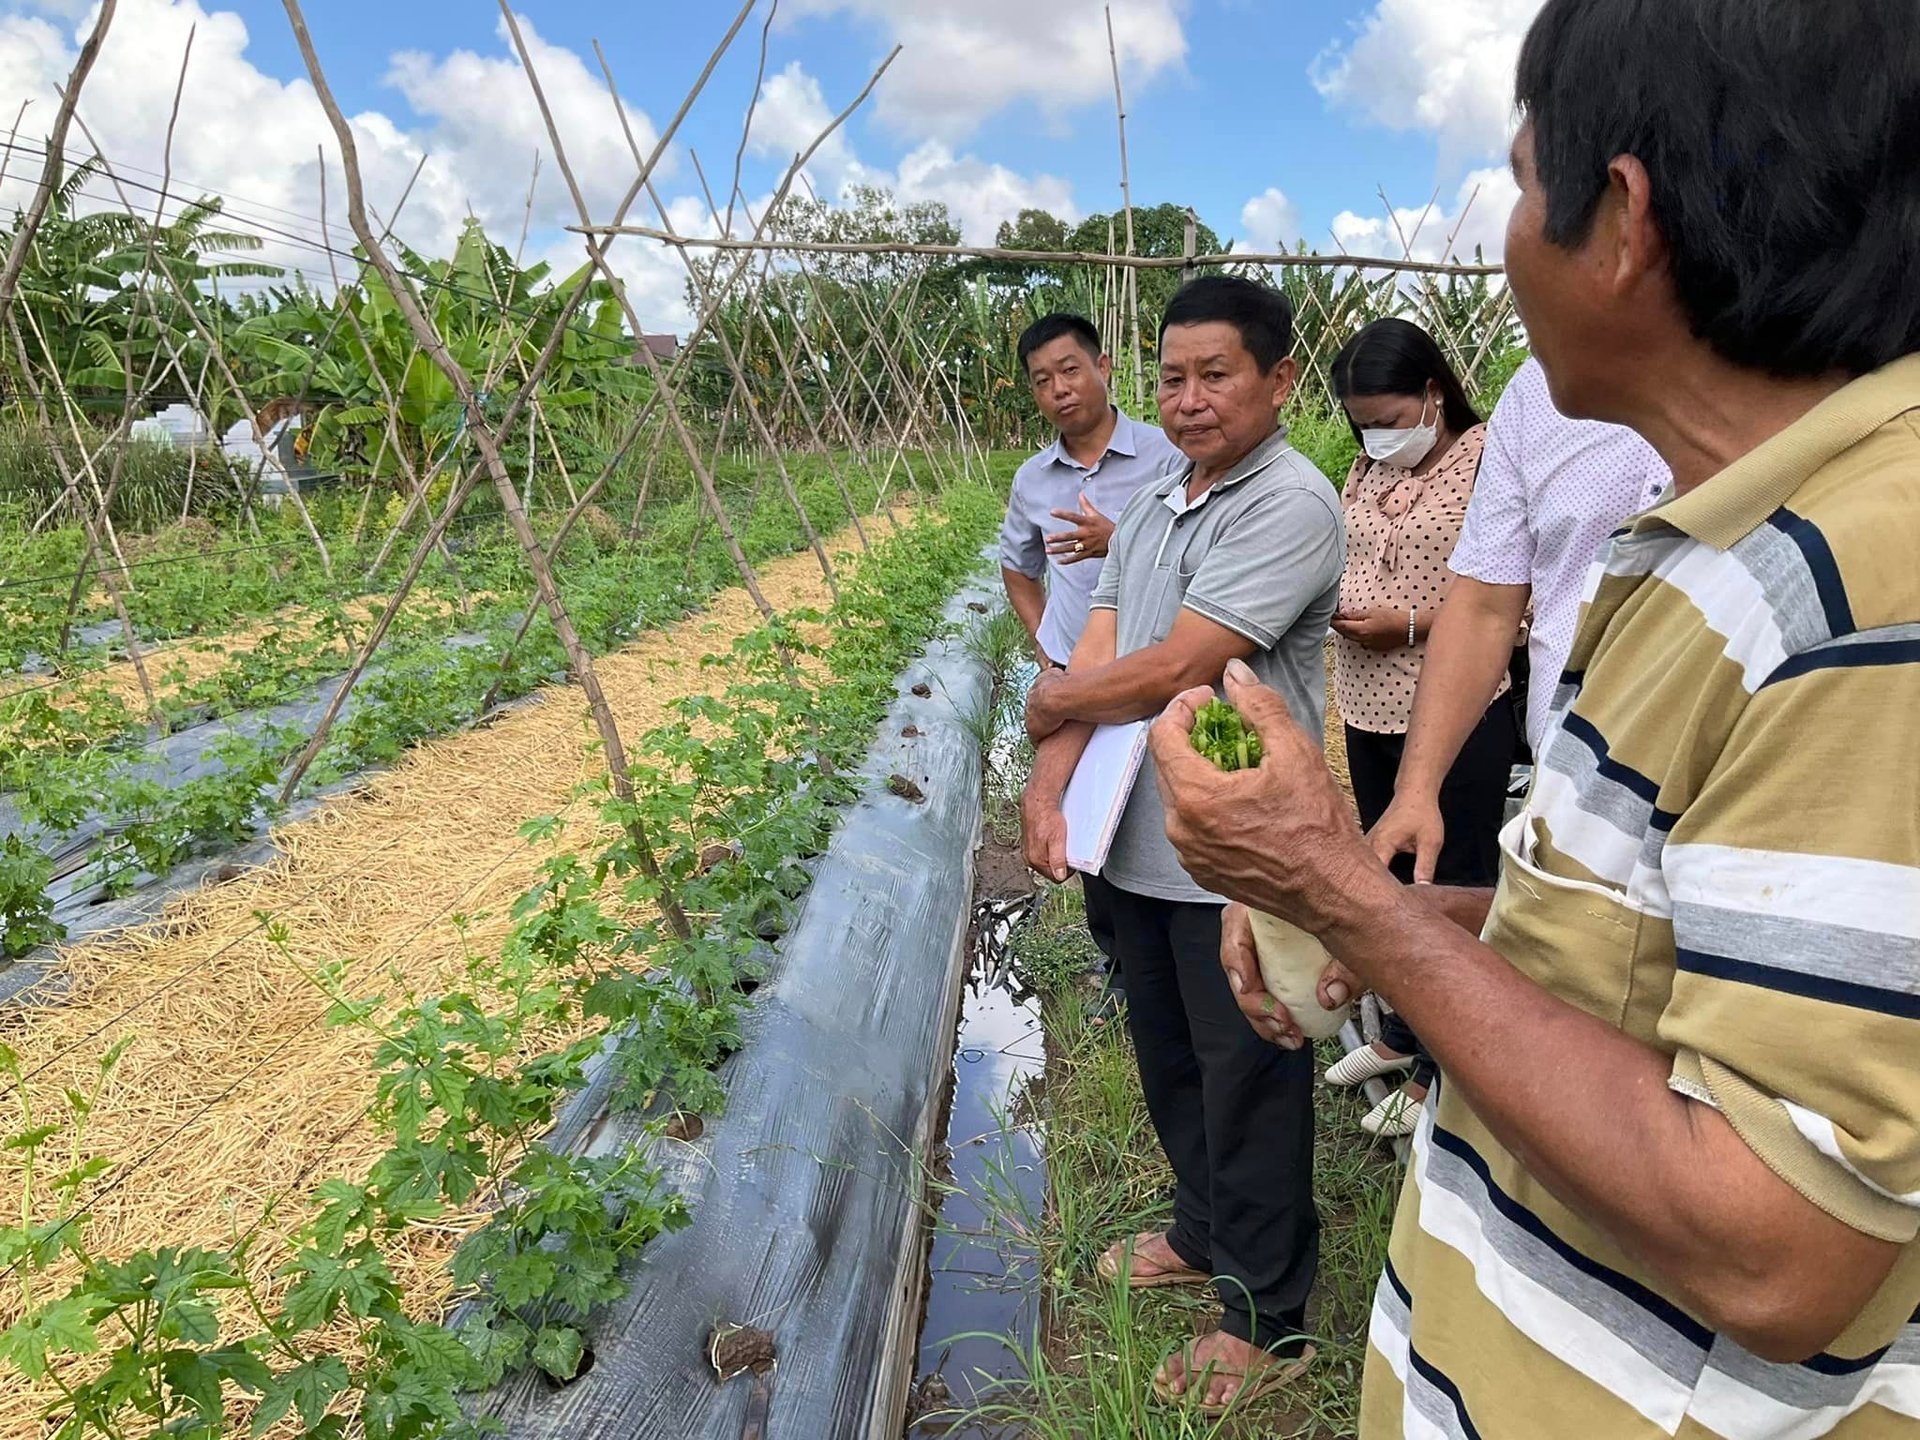 Giám sát vườn rau hữu cơ của nhóm sản xuất rau hữu cơ ở Long Thuận, huyện Hồng Ngự, tỉnh Đồng Tháp.